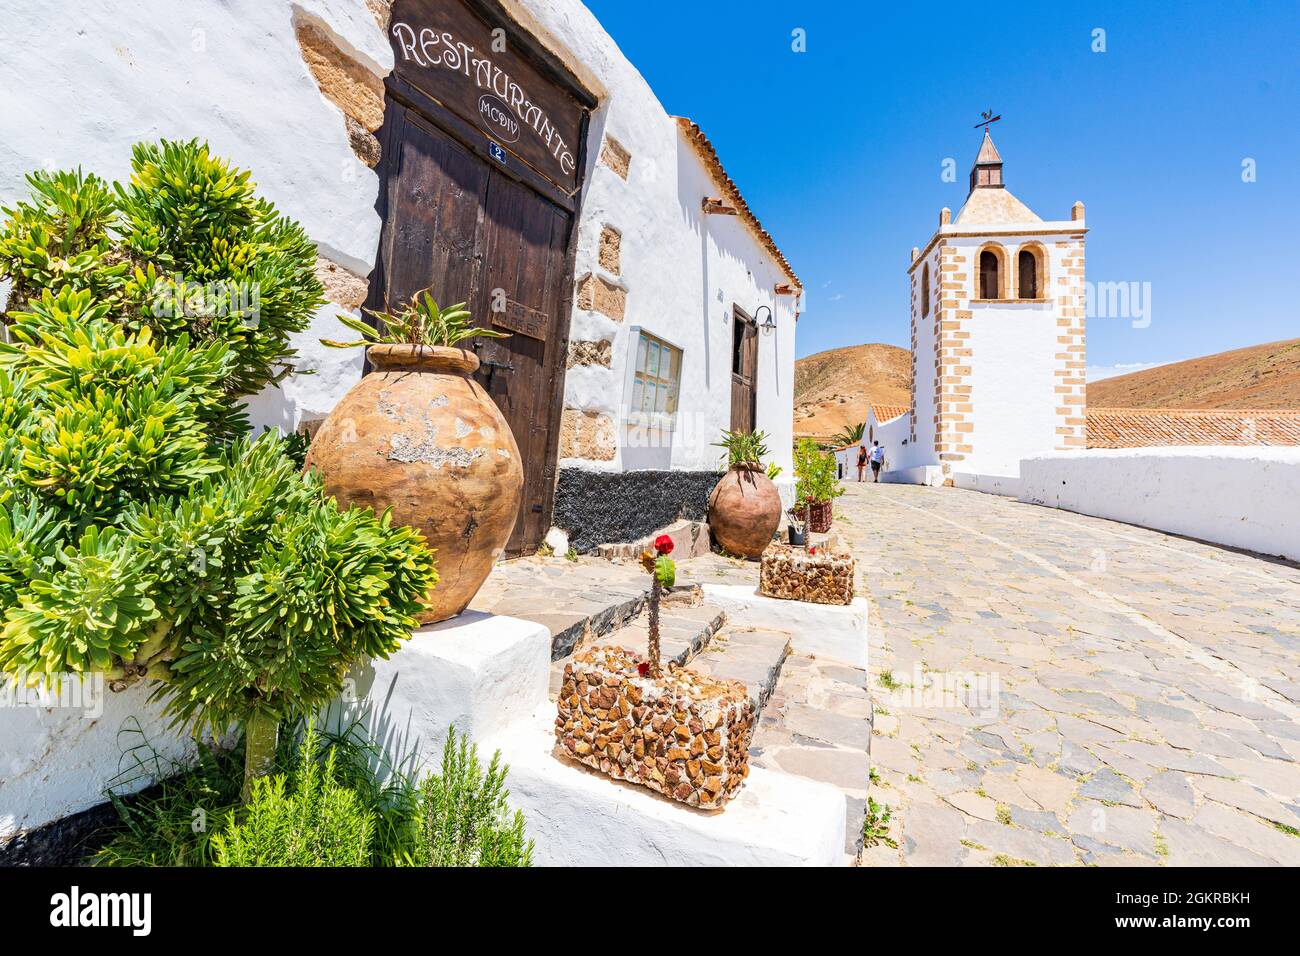 Touristes dans les ruelles à proximité de l'église Santa Maria dans le vieux village de Betancuria, Fuerteventura, îles Canaries, Espagne, Atlantique, Europe Banque D'Images